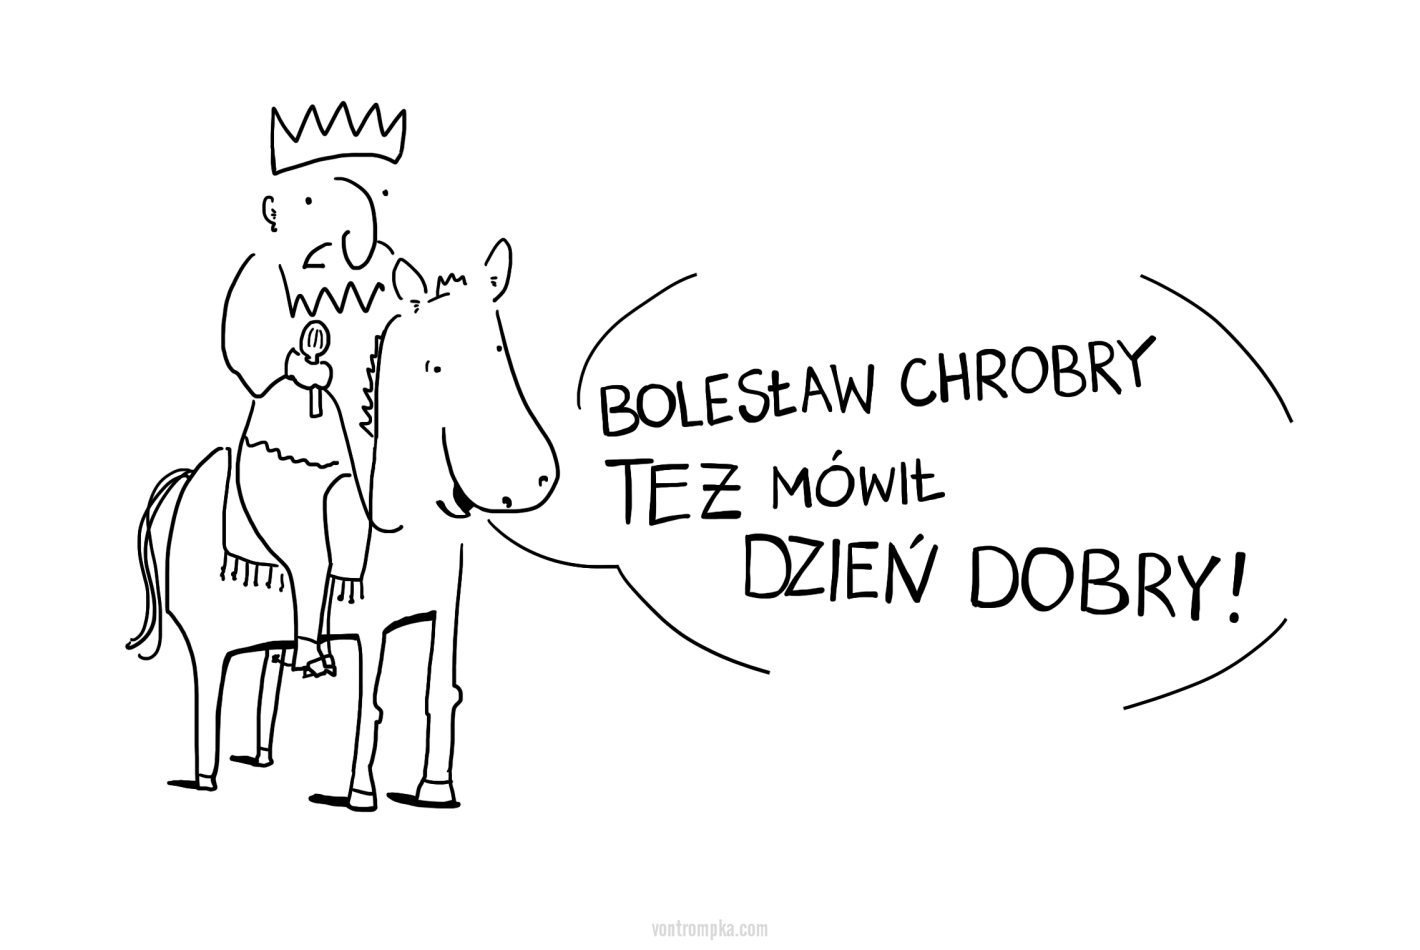 Bolesław Chrobry też mówił dzień dobry!